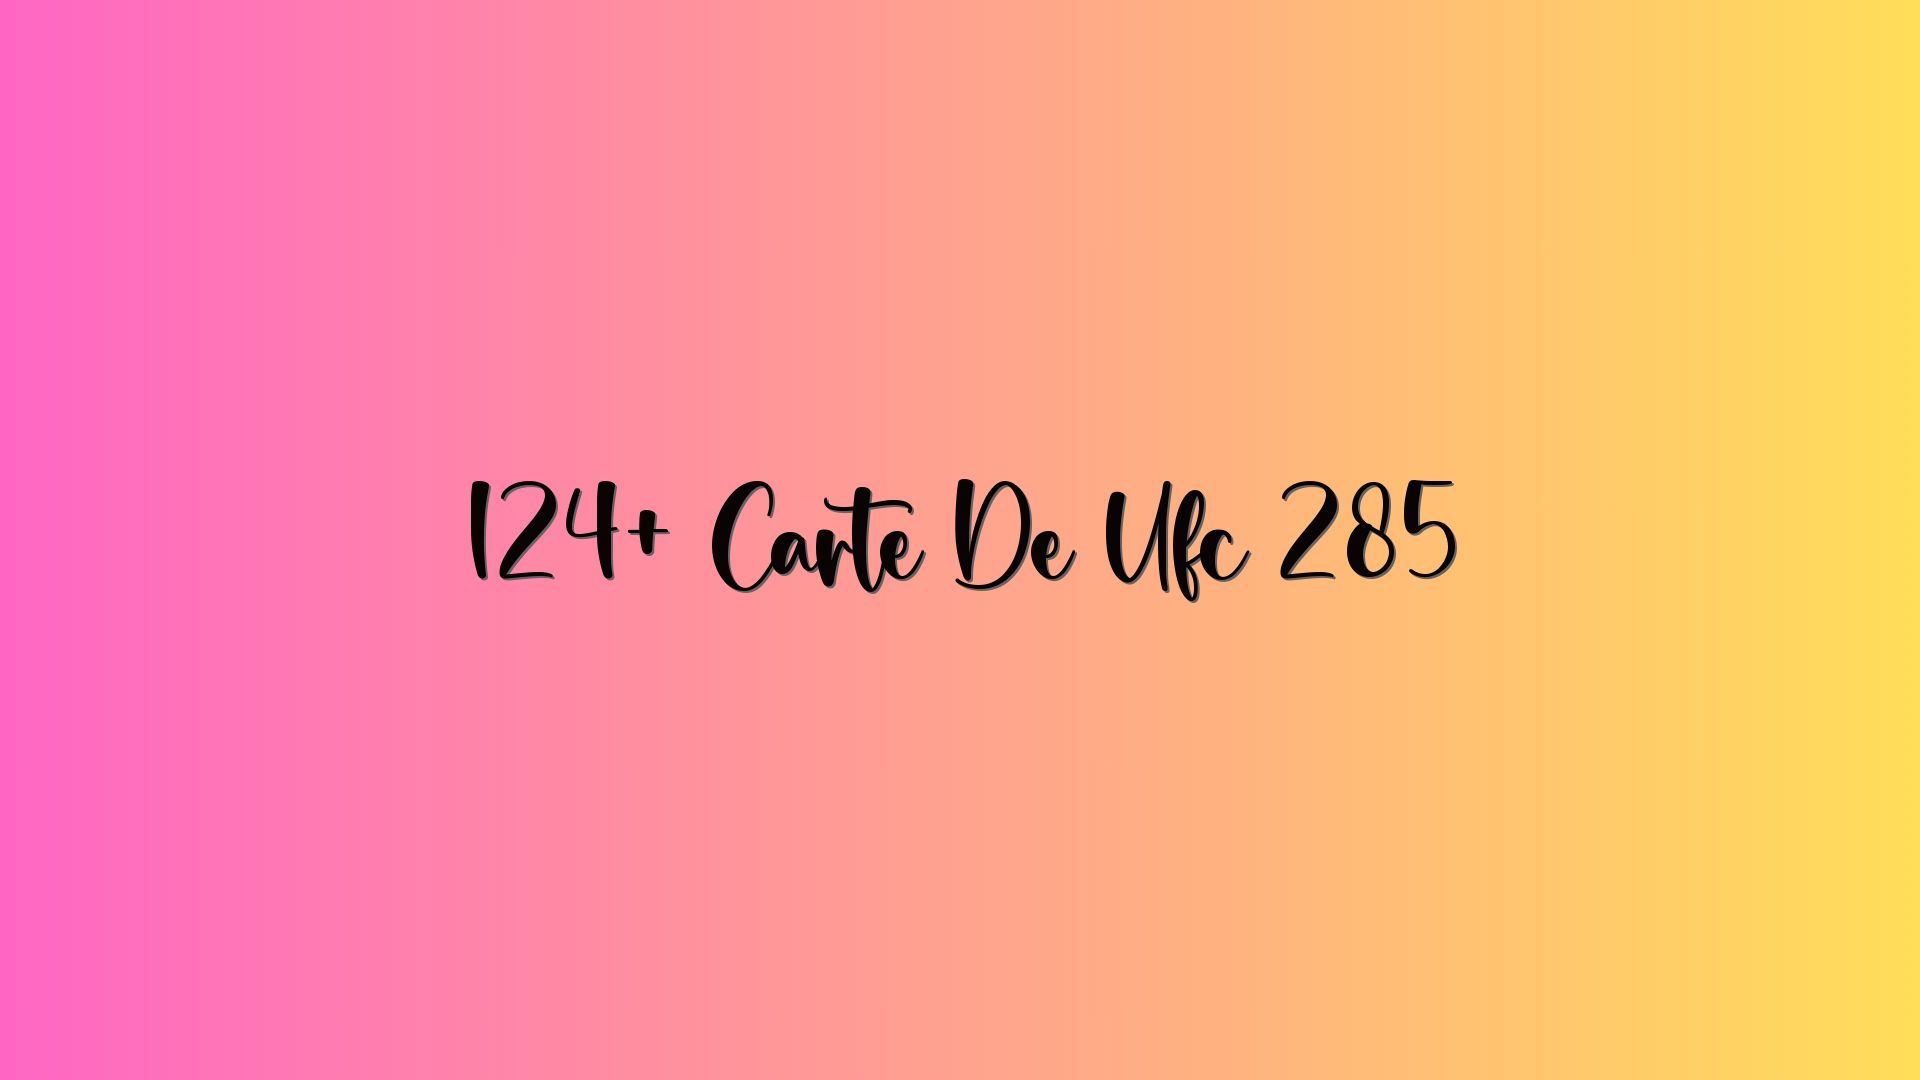 124+ Carte De Ufc 285